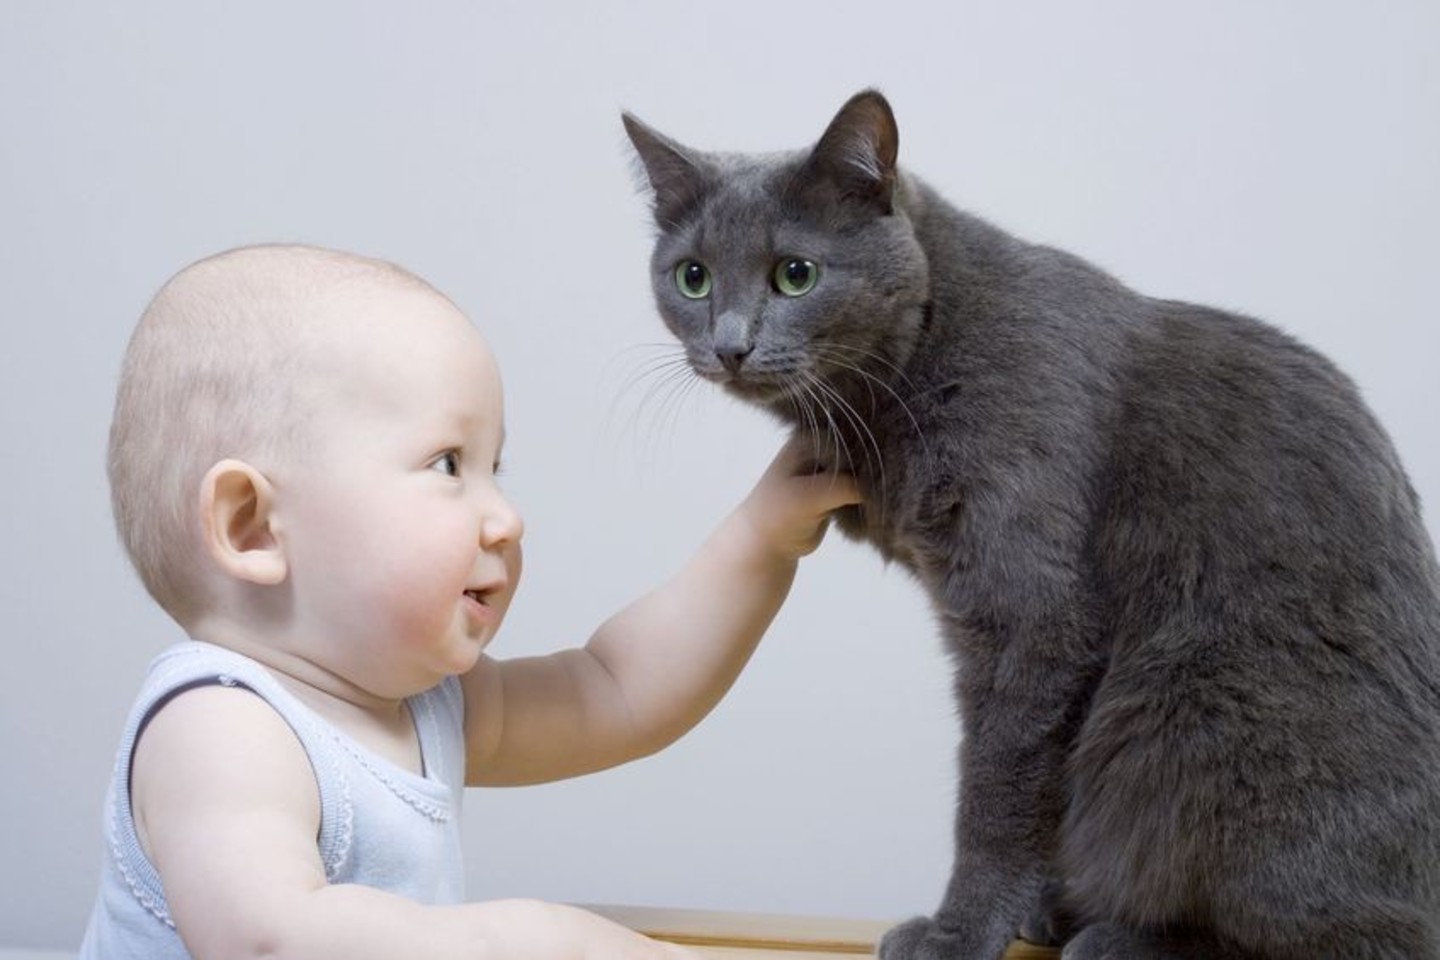 Katė reaguoja ne tik į kačiukų, bet ir į žmonių kūdikių pagalbos šauksmą.<br>123rf nuotr.